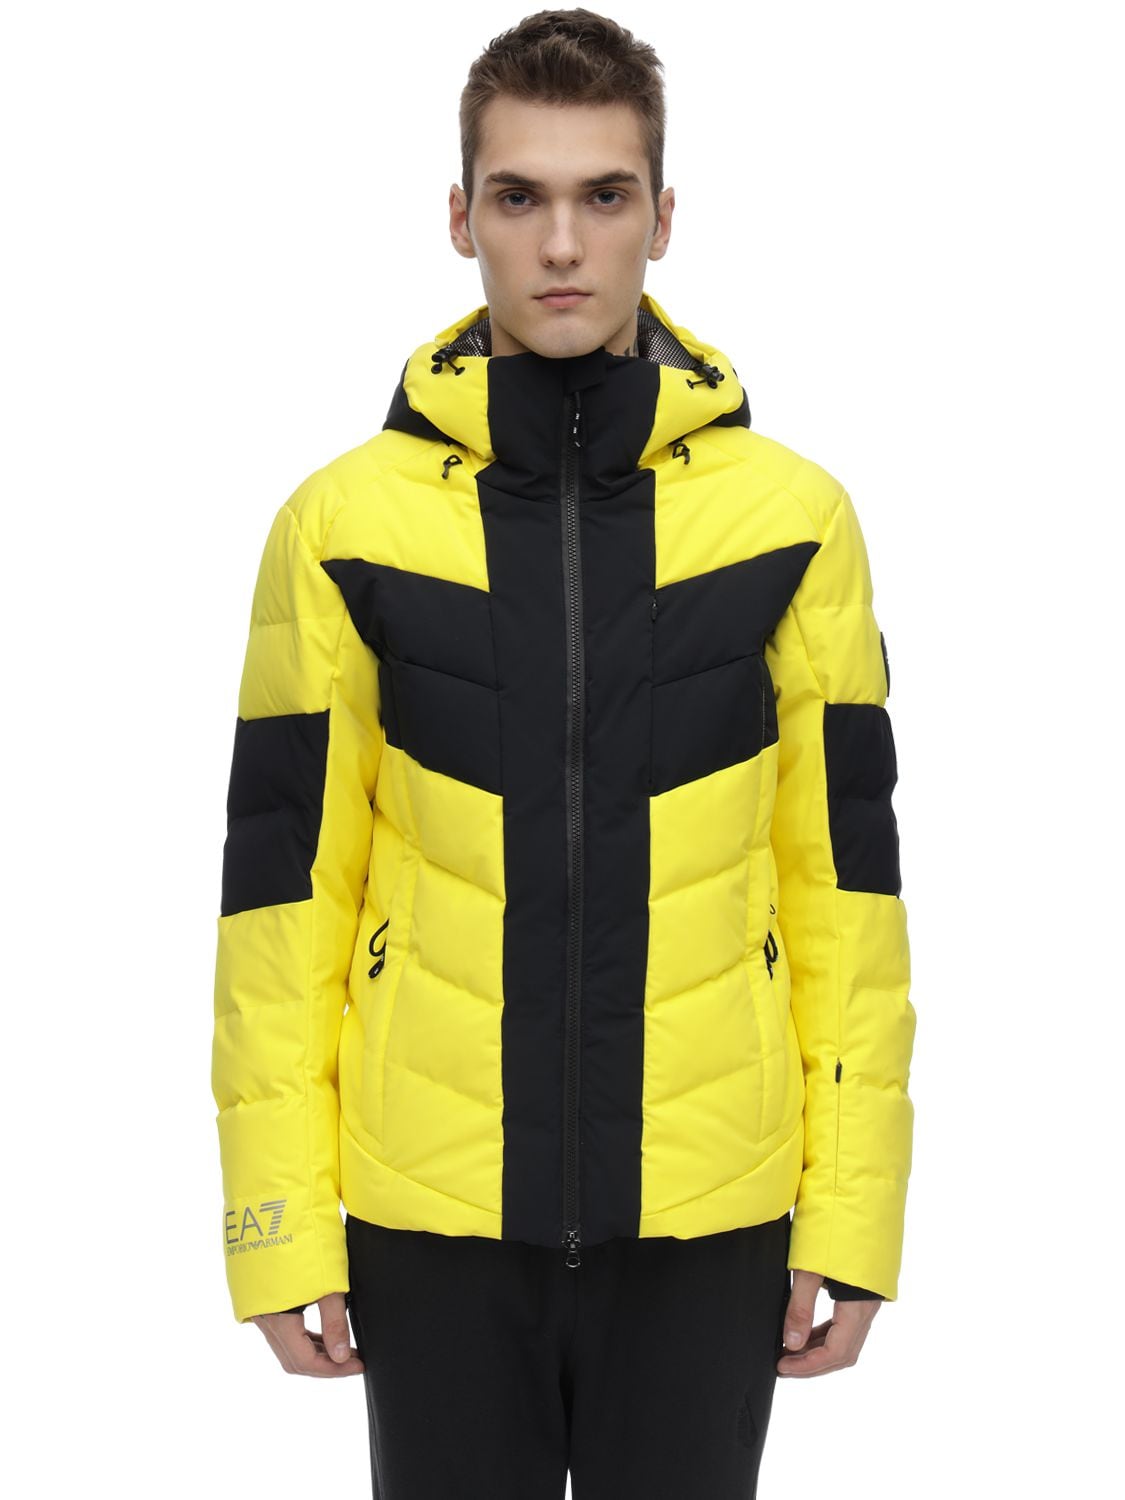 Ea7 Technical Down Ski Jacket In Yellow,black | ModeSens